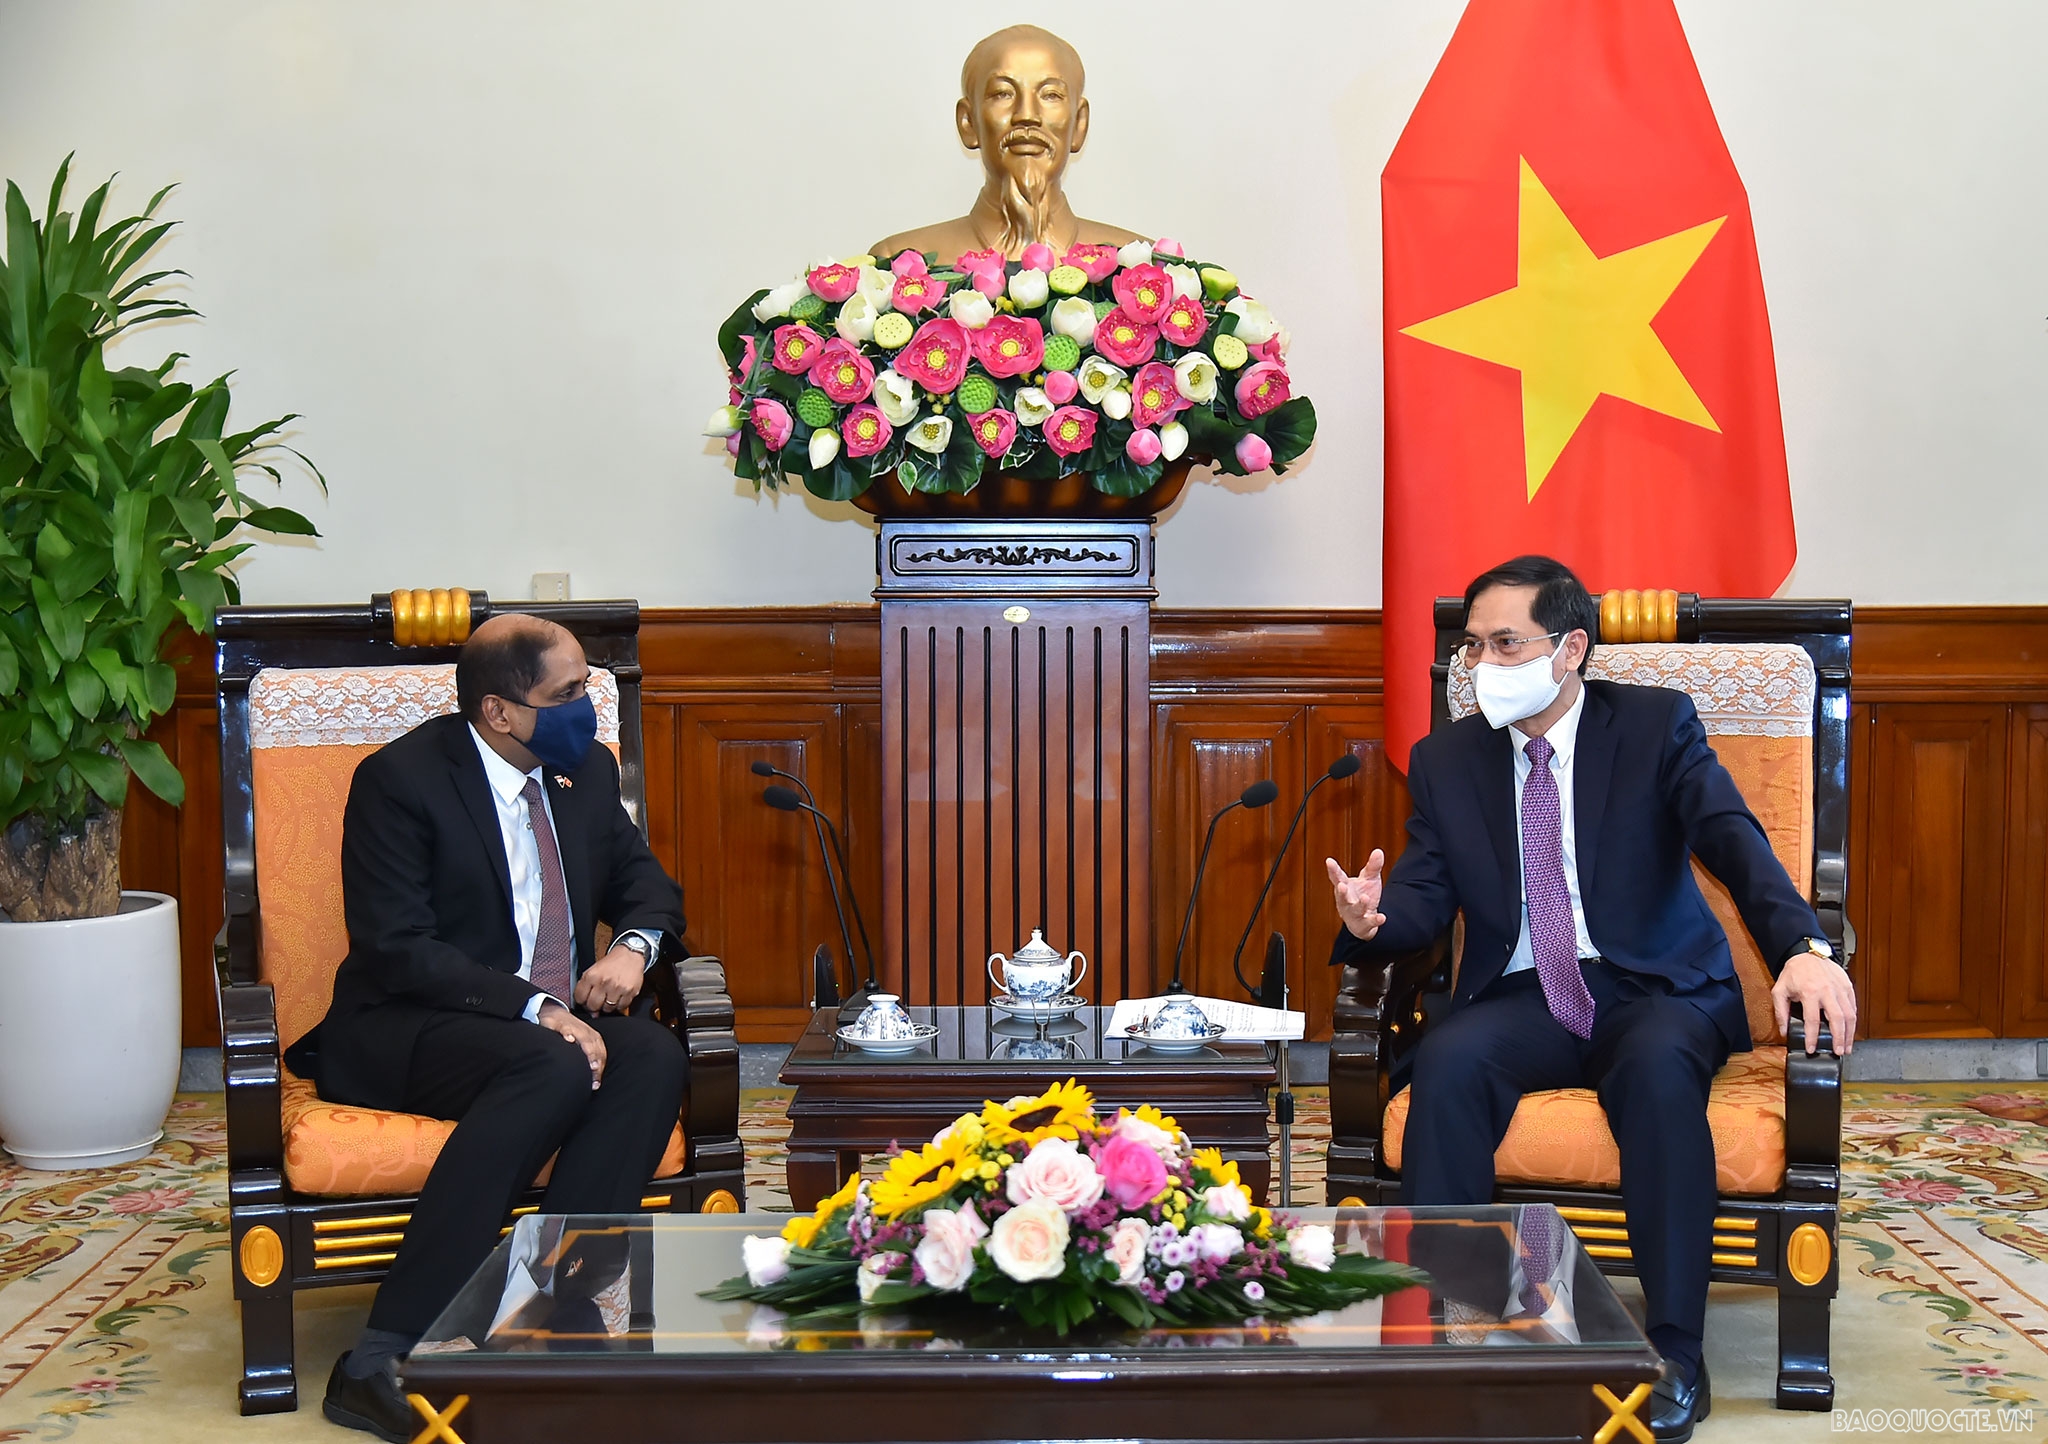 Chiều ngày 26/5, Bộ trưởng Ngoại giao Bùi Thanh Sơn đã tiếp Đại sứ Jaya Ratnam đến chào xã giao sau khi bắt đầu nhiệm kỳ tại Việt Nam. (Ảnh: Tuấn Anh)